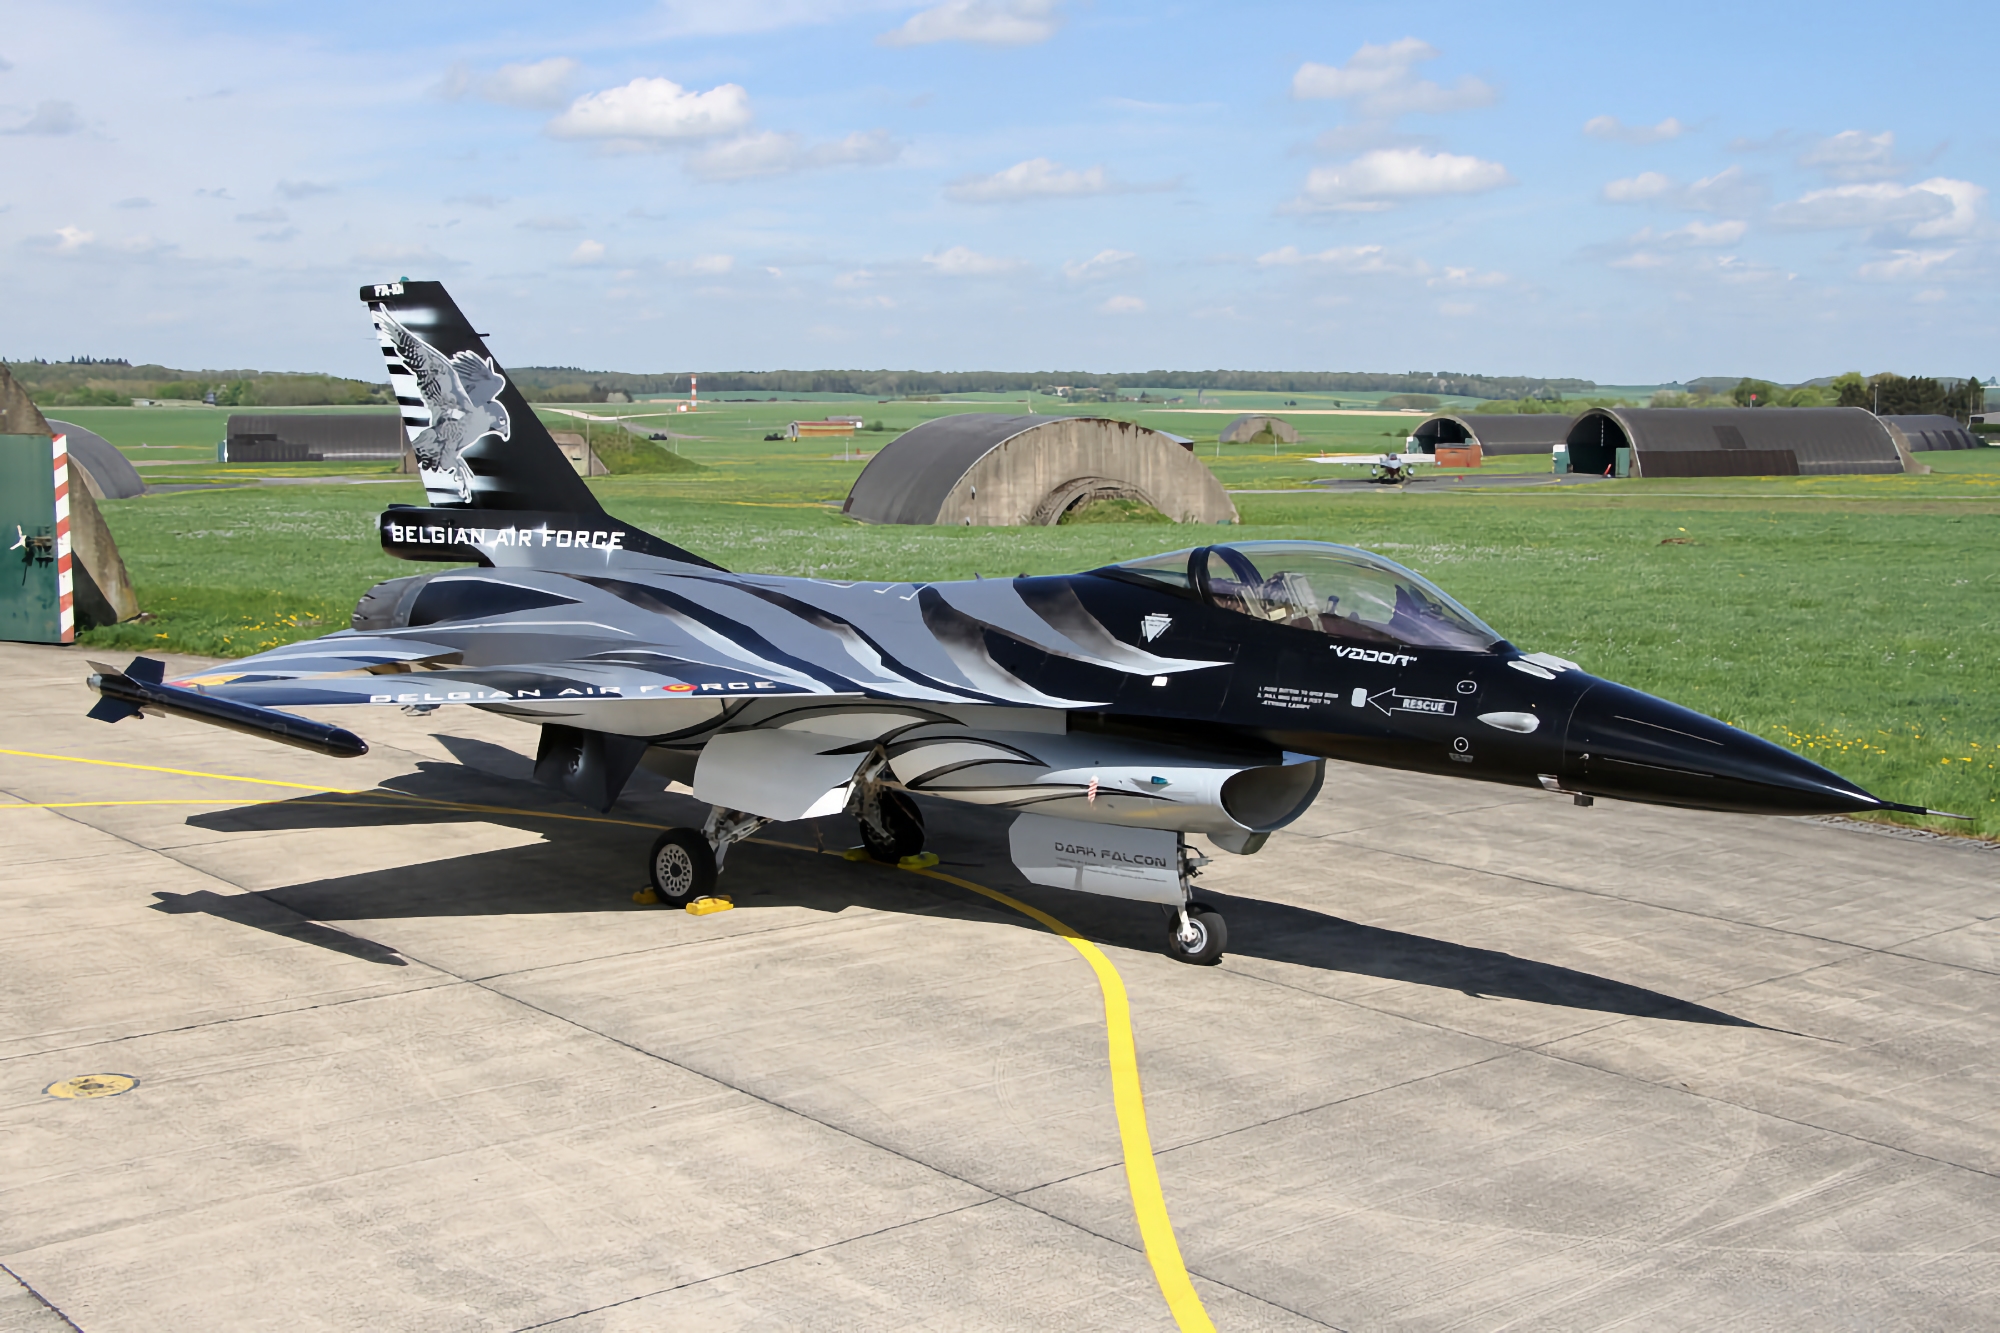 No sólo los Países Bajos, Dinamarca y Noruega: Bélgica también entregará cazas F-16 Fighting Falcon a Ucrania, pero en cuanto reciba los F-35 Lightning II.